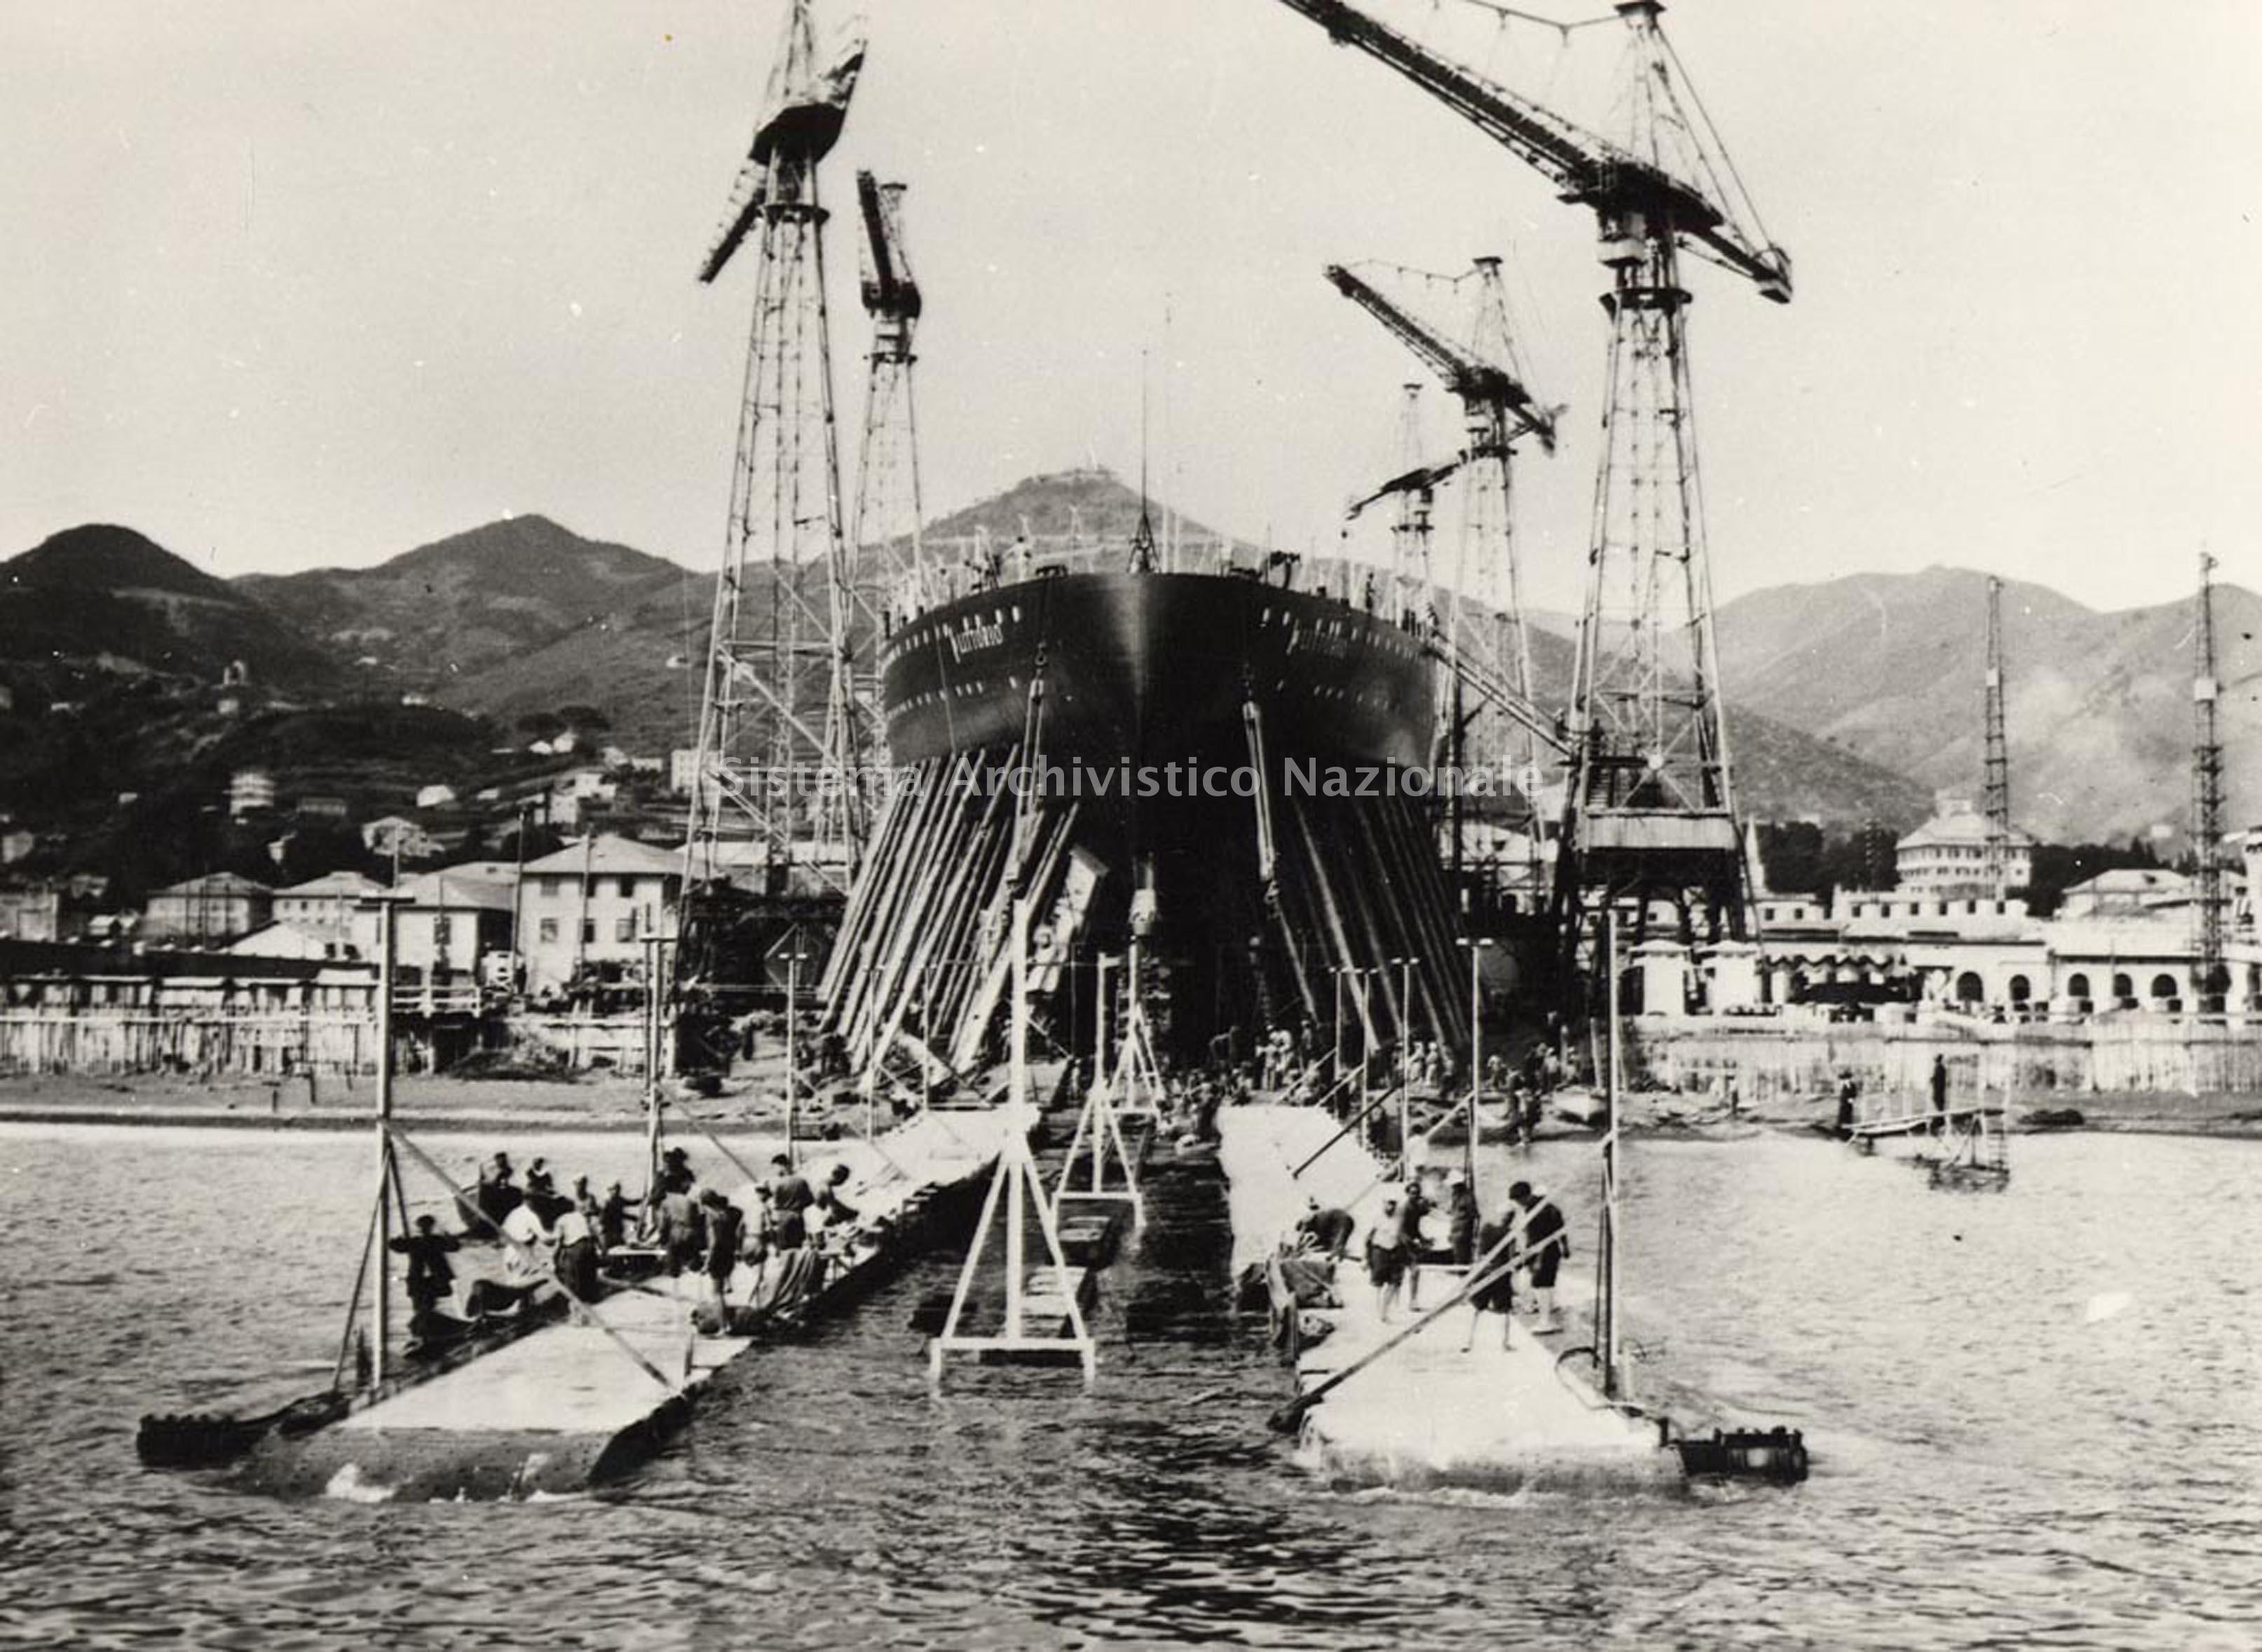   Corazzata in costruzione nel Cantiere navale Ansaldo di Genova Sestri Ponente, 1937 (Fondazione Ansaldo).
